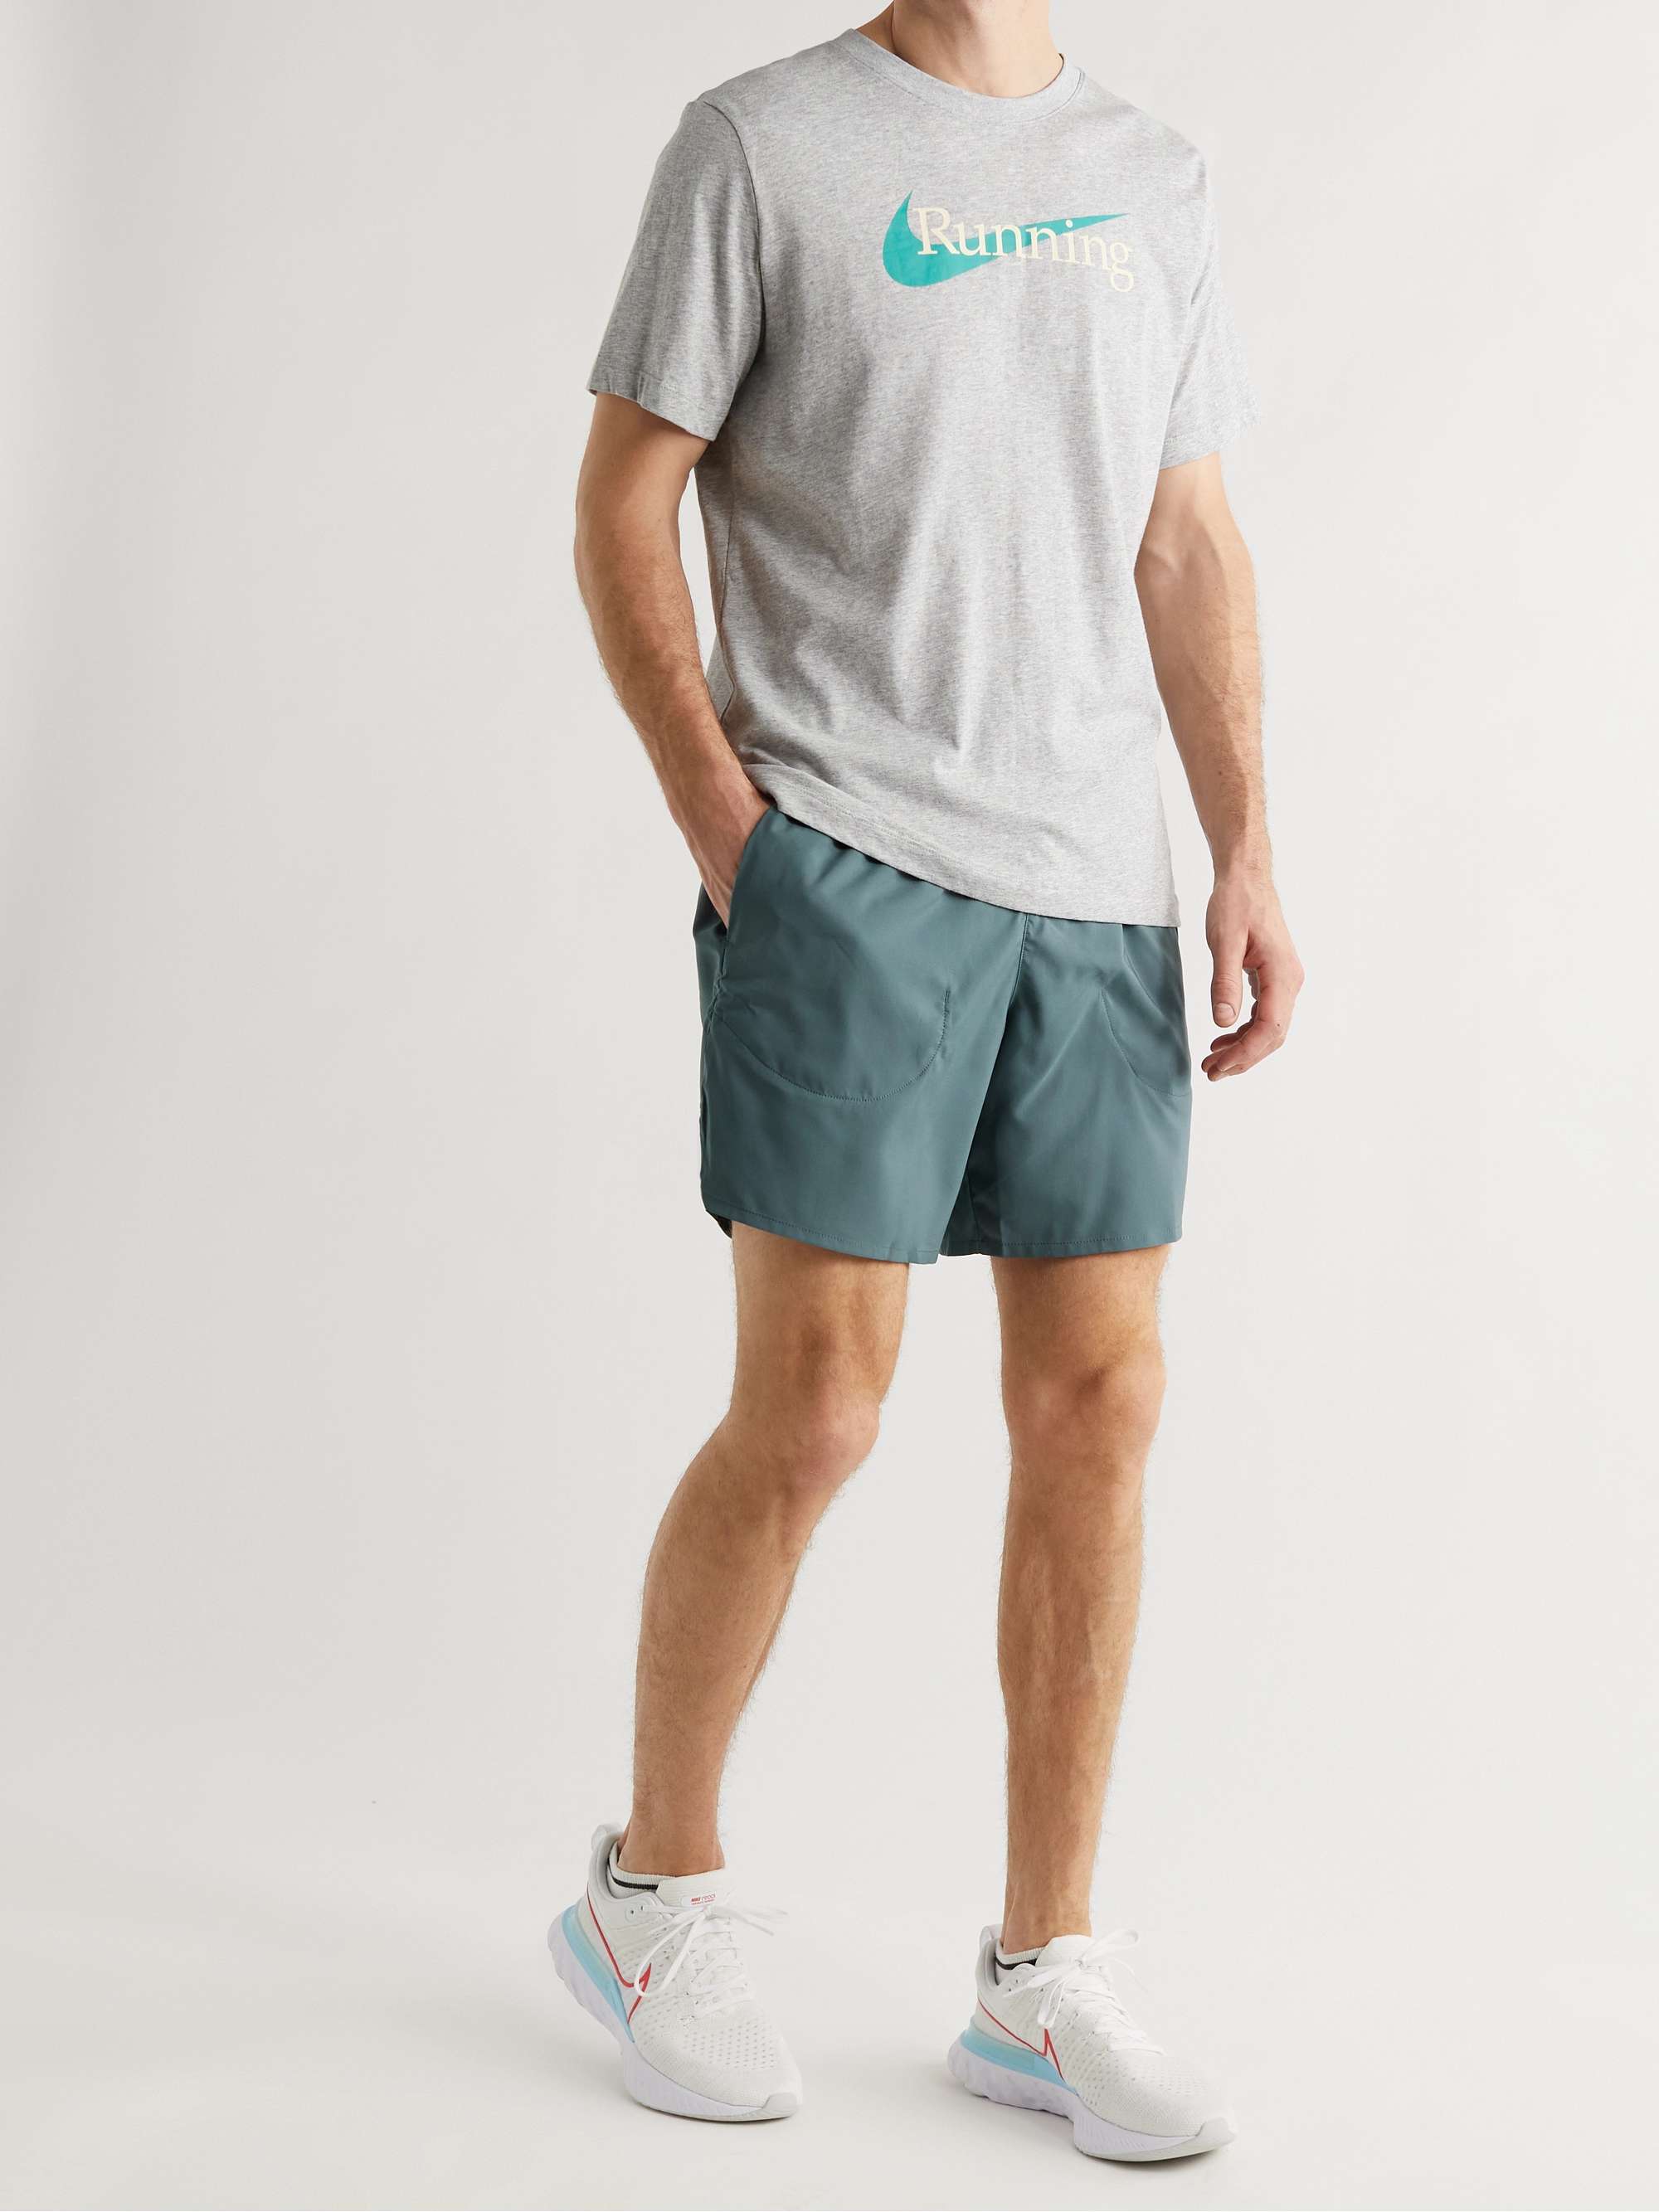 NIKE RUNNING Flex Stride Dri-FIT Stretch-Shell Shorts